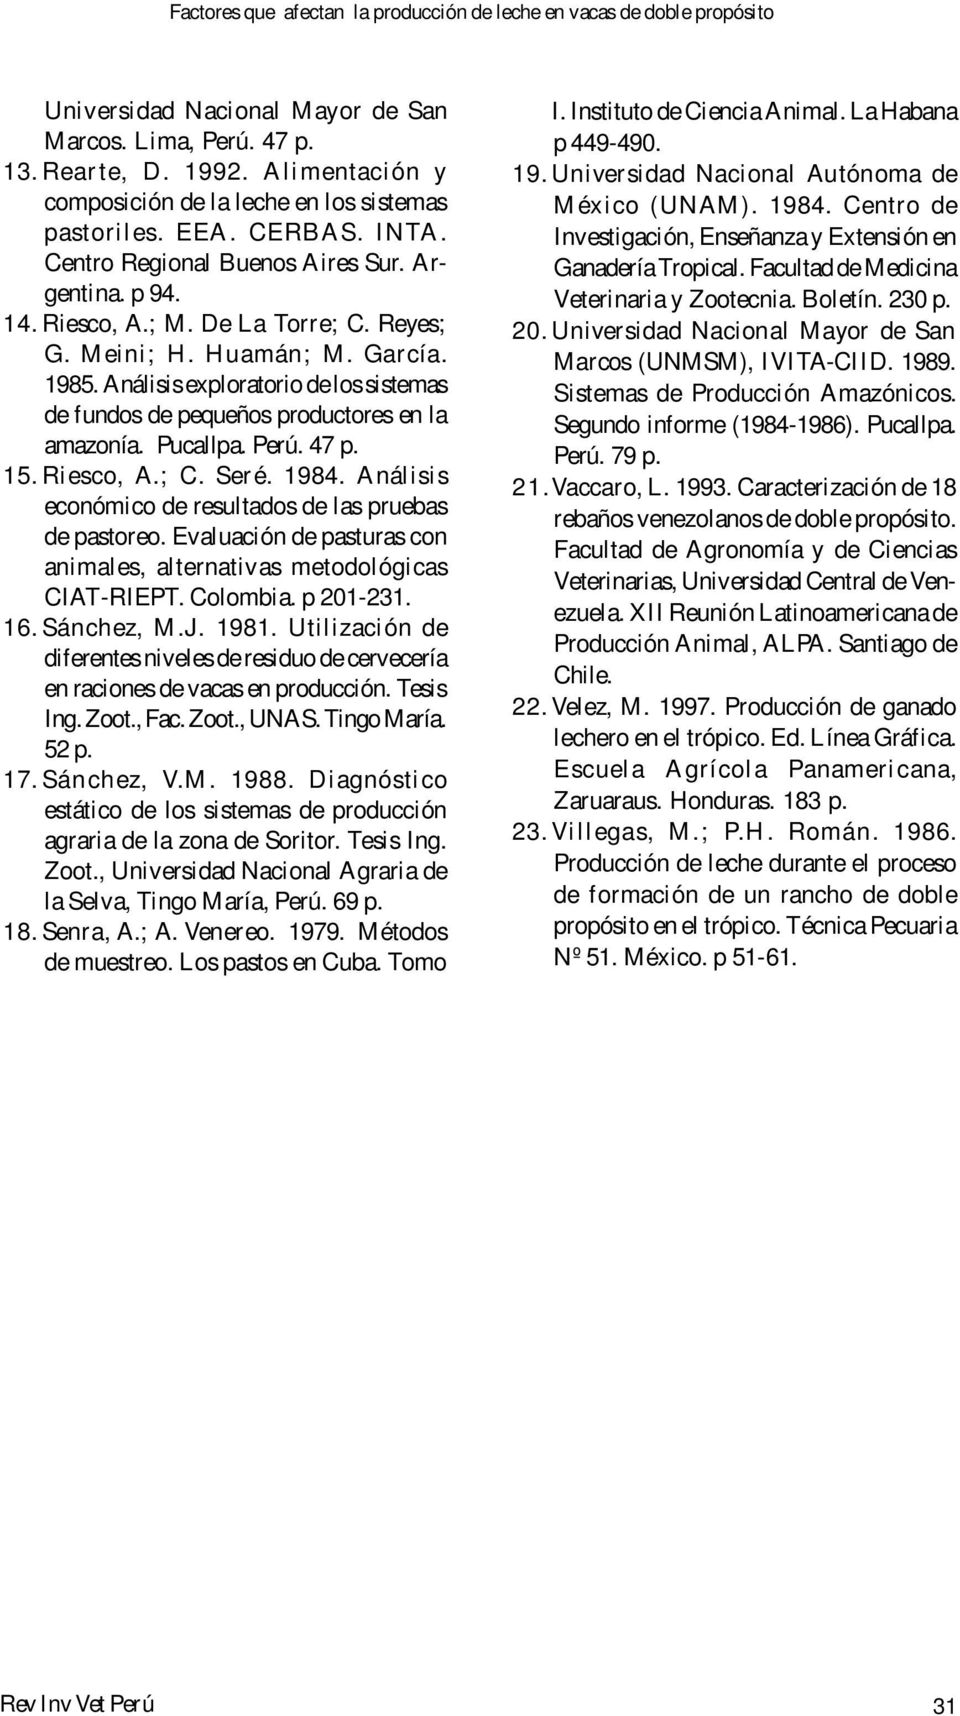 47 p. 15. Riesco, A.; C. Seré. 1984. Análisis económico de resultados de las pruebas de pastoreo. Evaluación de pasturas con animales, alternativas metodológicas CIAT-RIEPT. Colombia. p 01-31. 16.